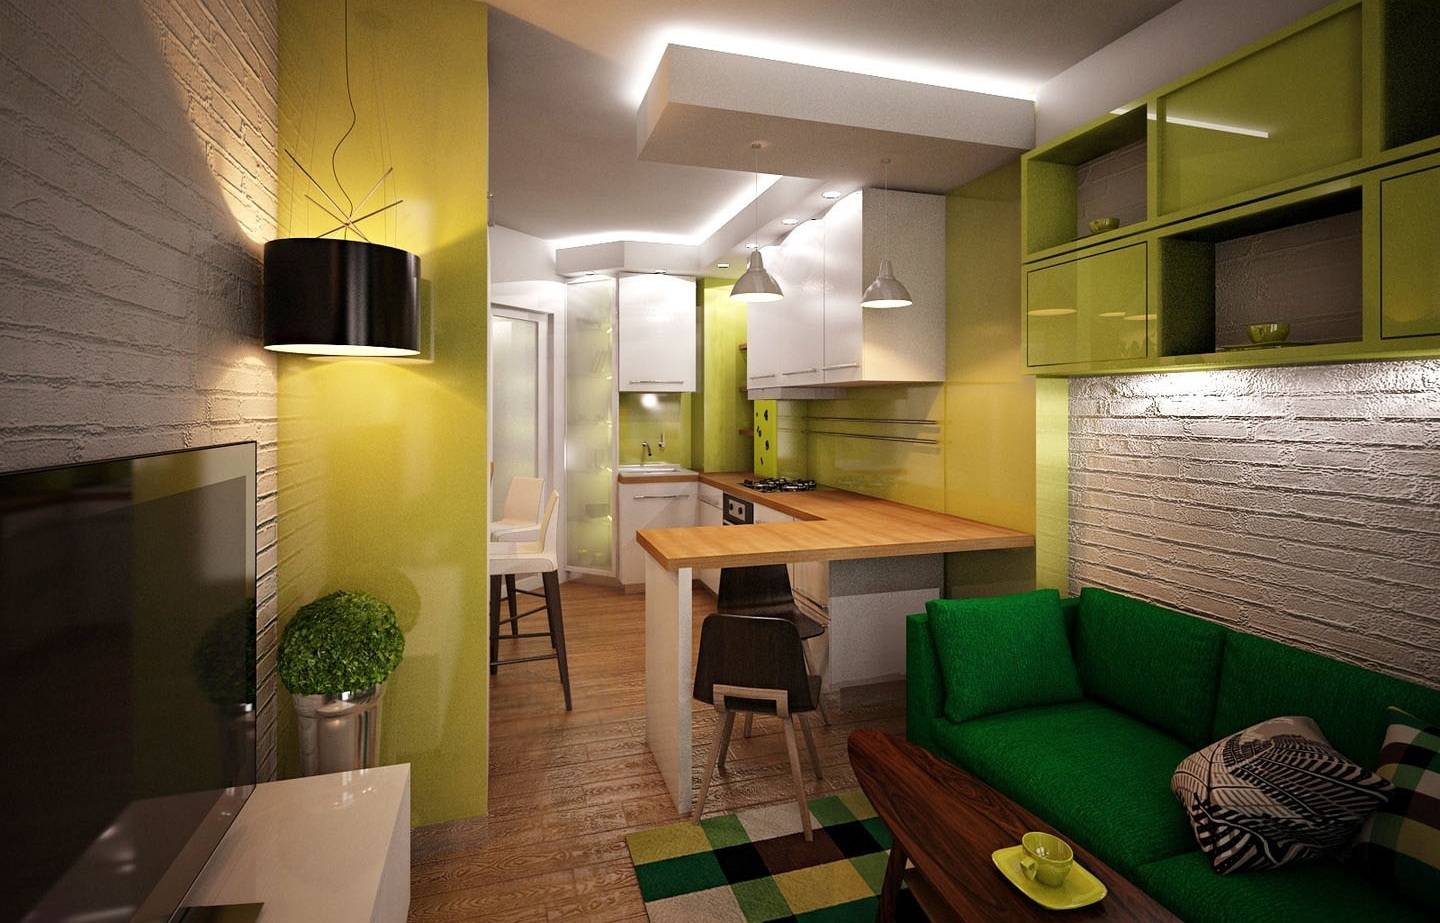 Кухня-гостиная 15 квадратов: варианты дизайна и планировки
кухня-гостиная 15 квадратов: варианты дизайна и планировки